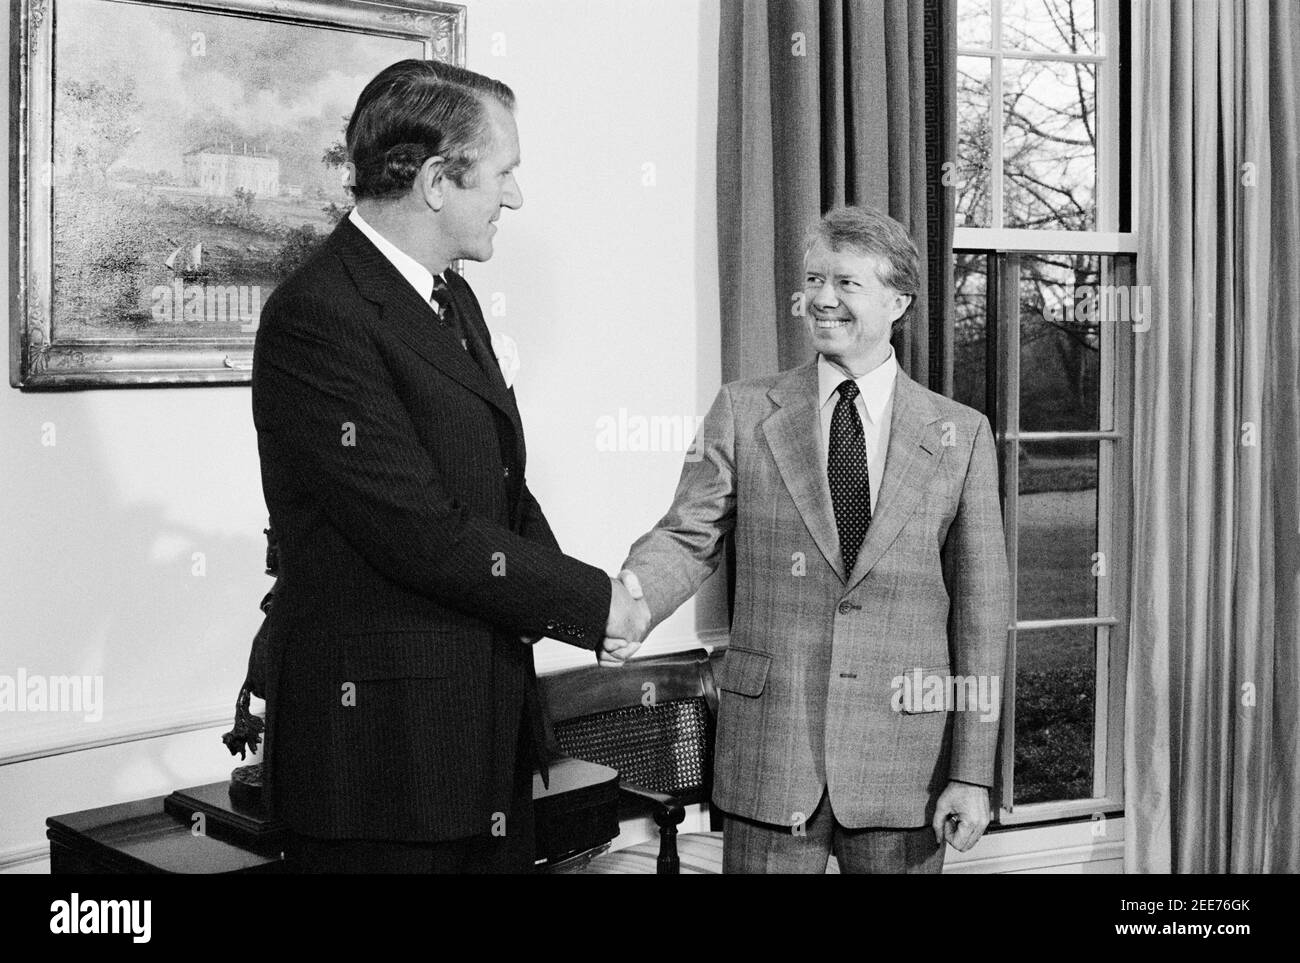 Der australische Premierminister Malcolm Fraser schüttelt sich die Hände mit US-Präsident Jimmy Carter, Halblanges Porträt, Washington, D.C., USA, 1979, 1970-1979, 1970, Marion S. Trikosko Stockfoto